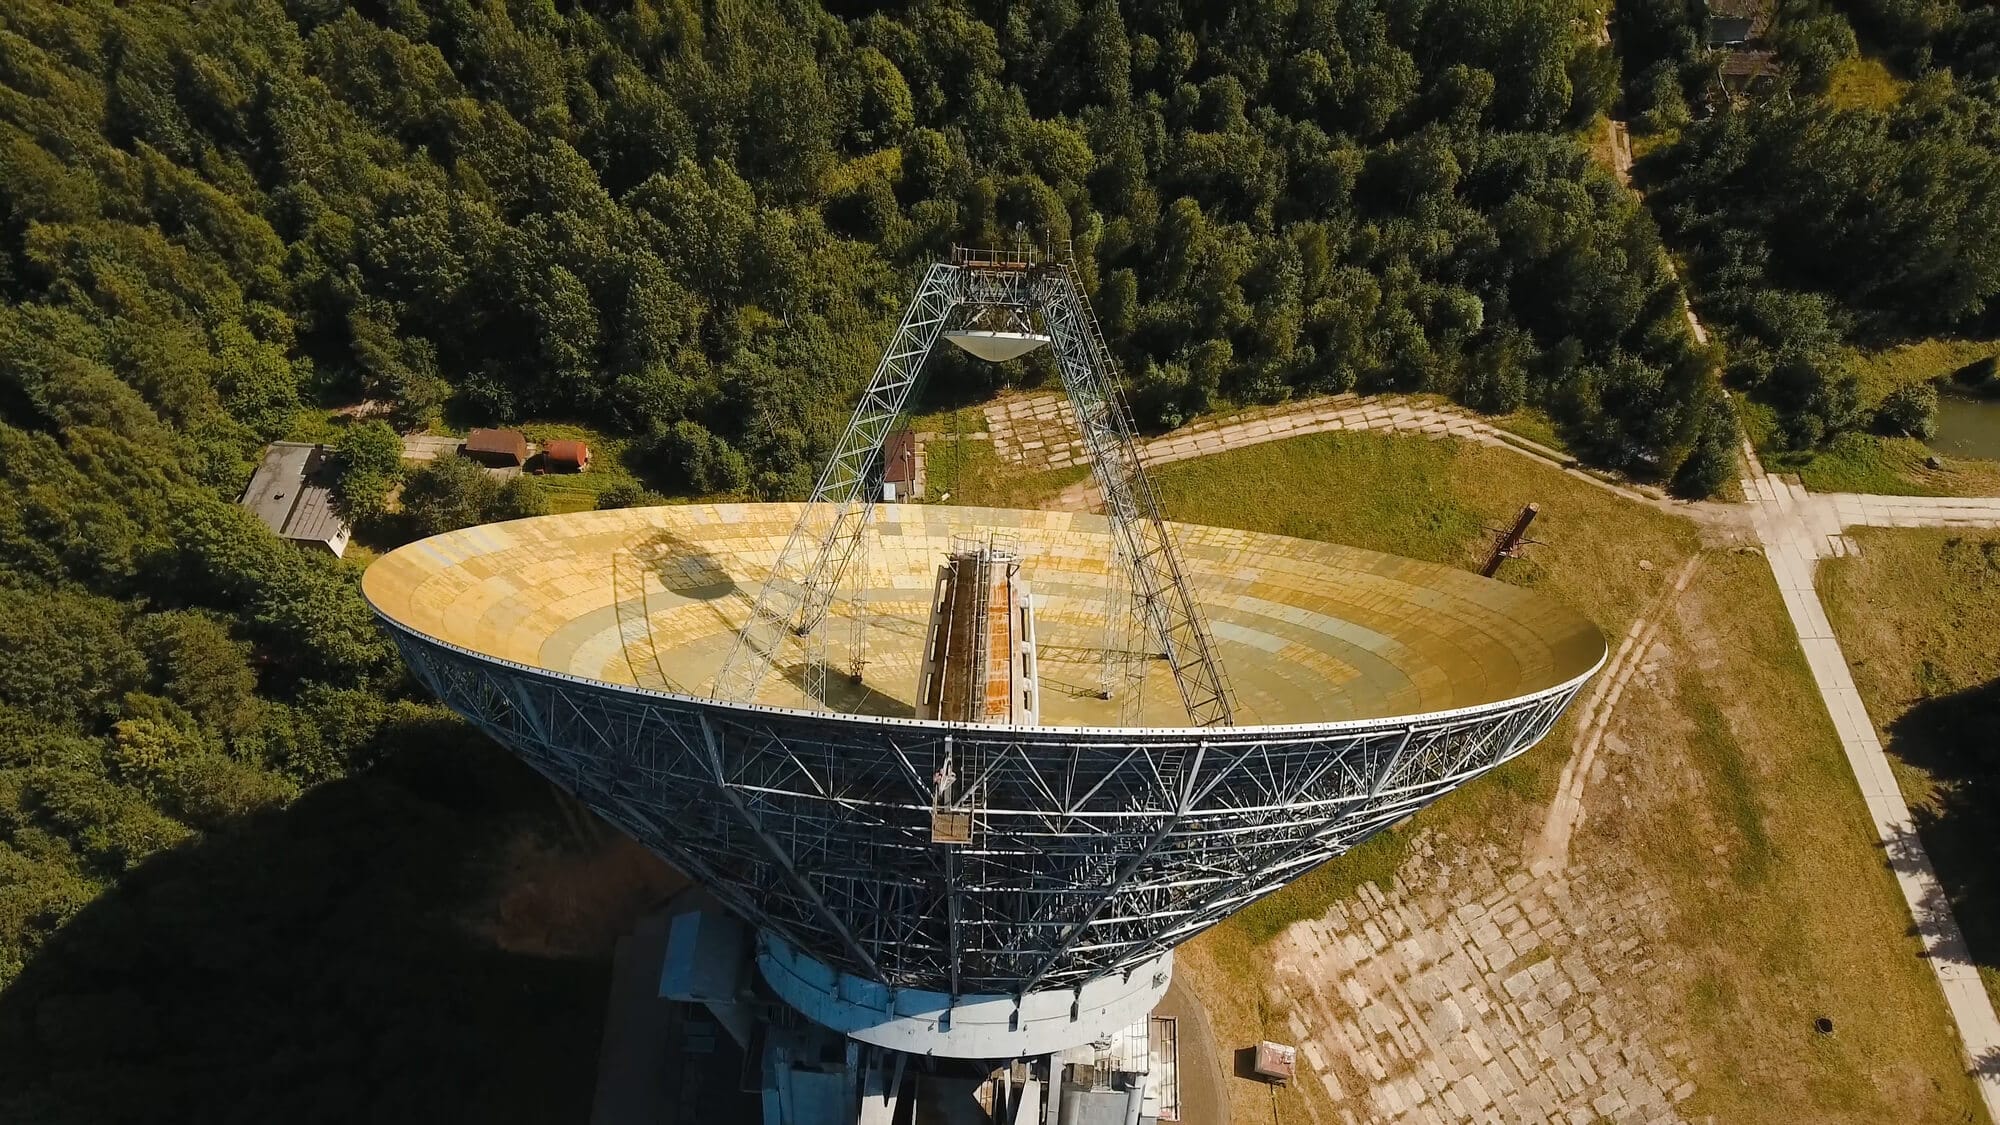 טלסקופ רדיו ענק. <a href="https://depositphotos.com. ">המחשה: depositphotos.com</a>